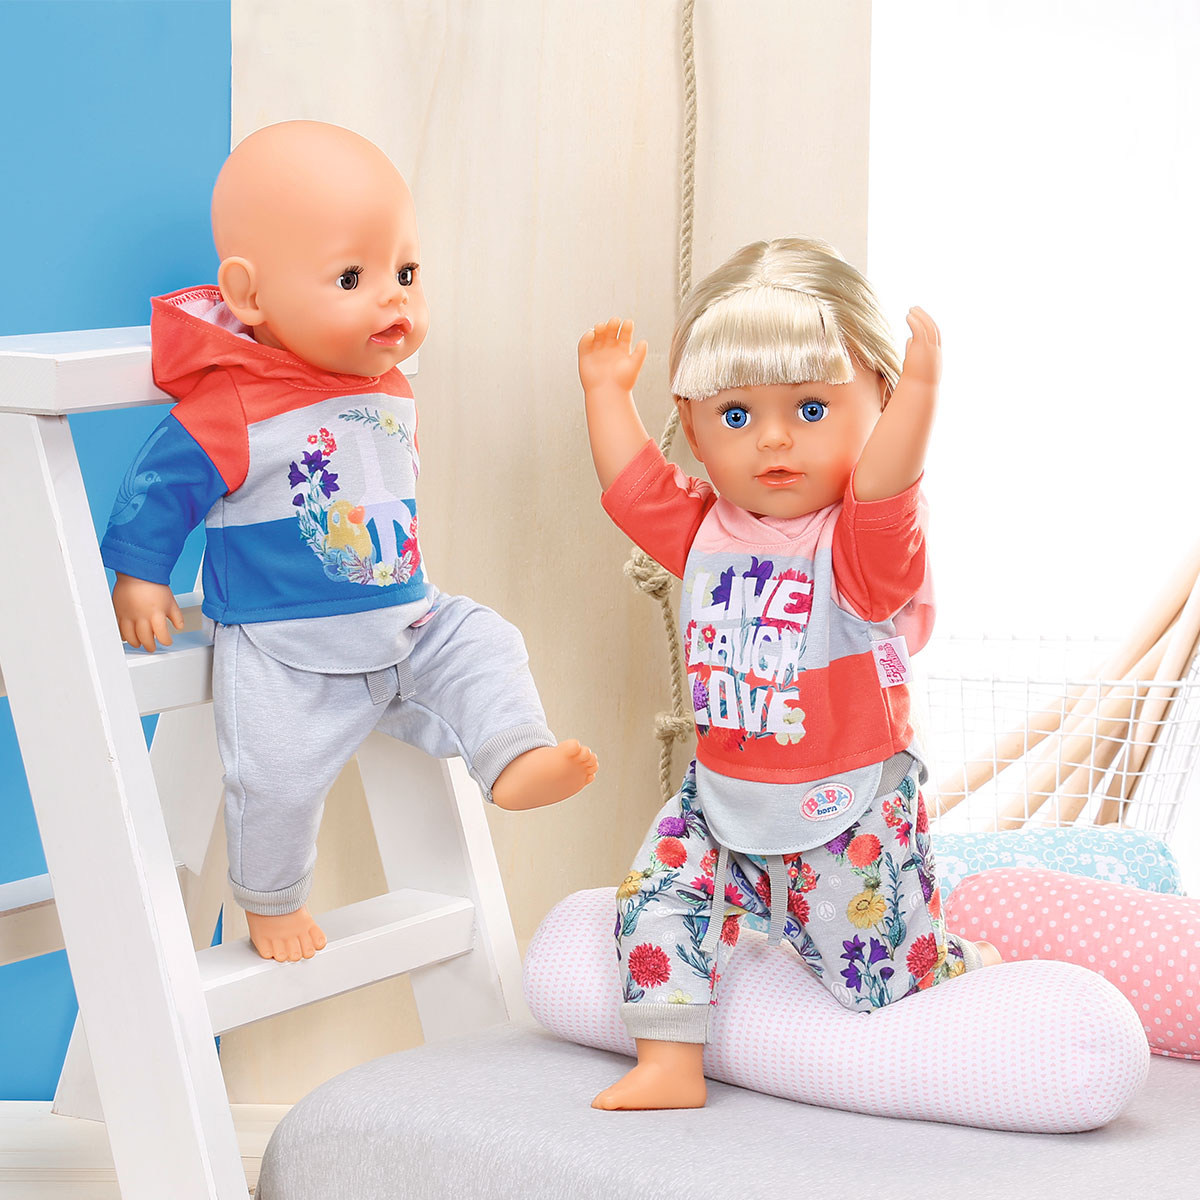 Набор одежды для куклы BABY born Трендовый спортивный костюм (синий) (826980-2)